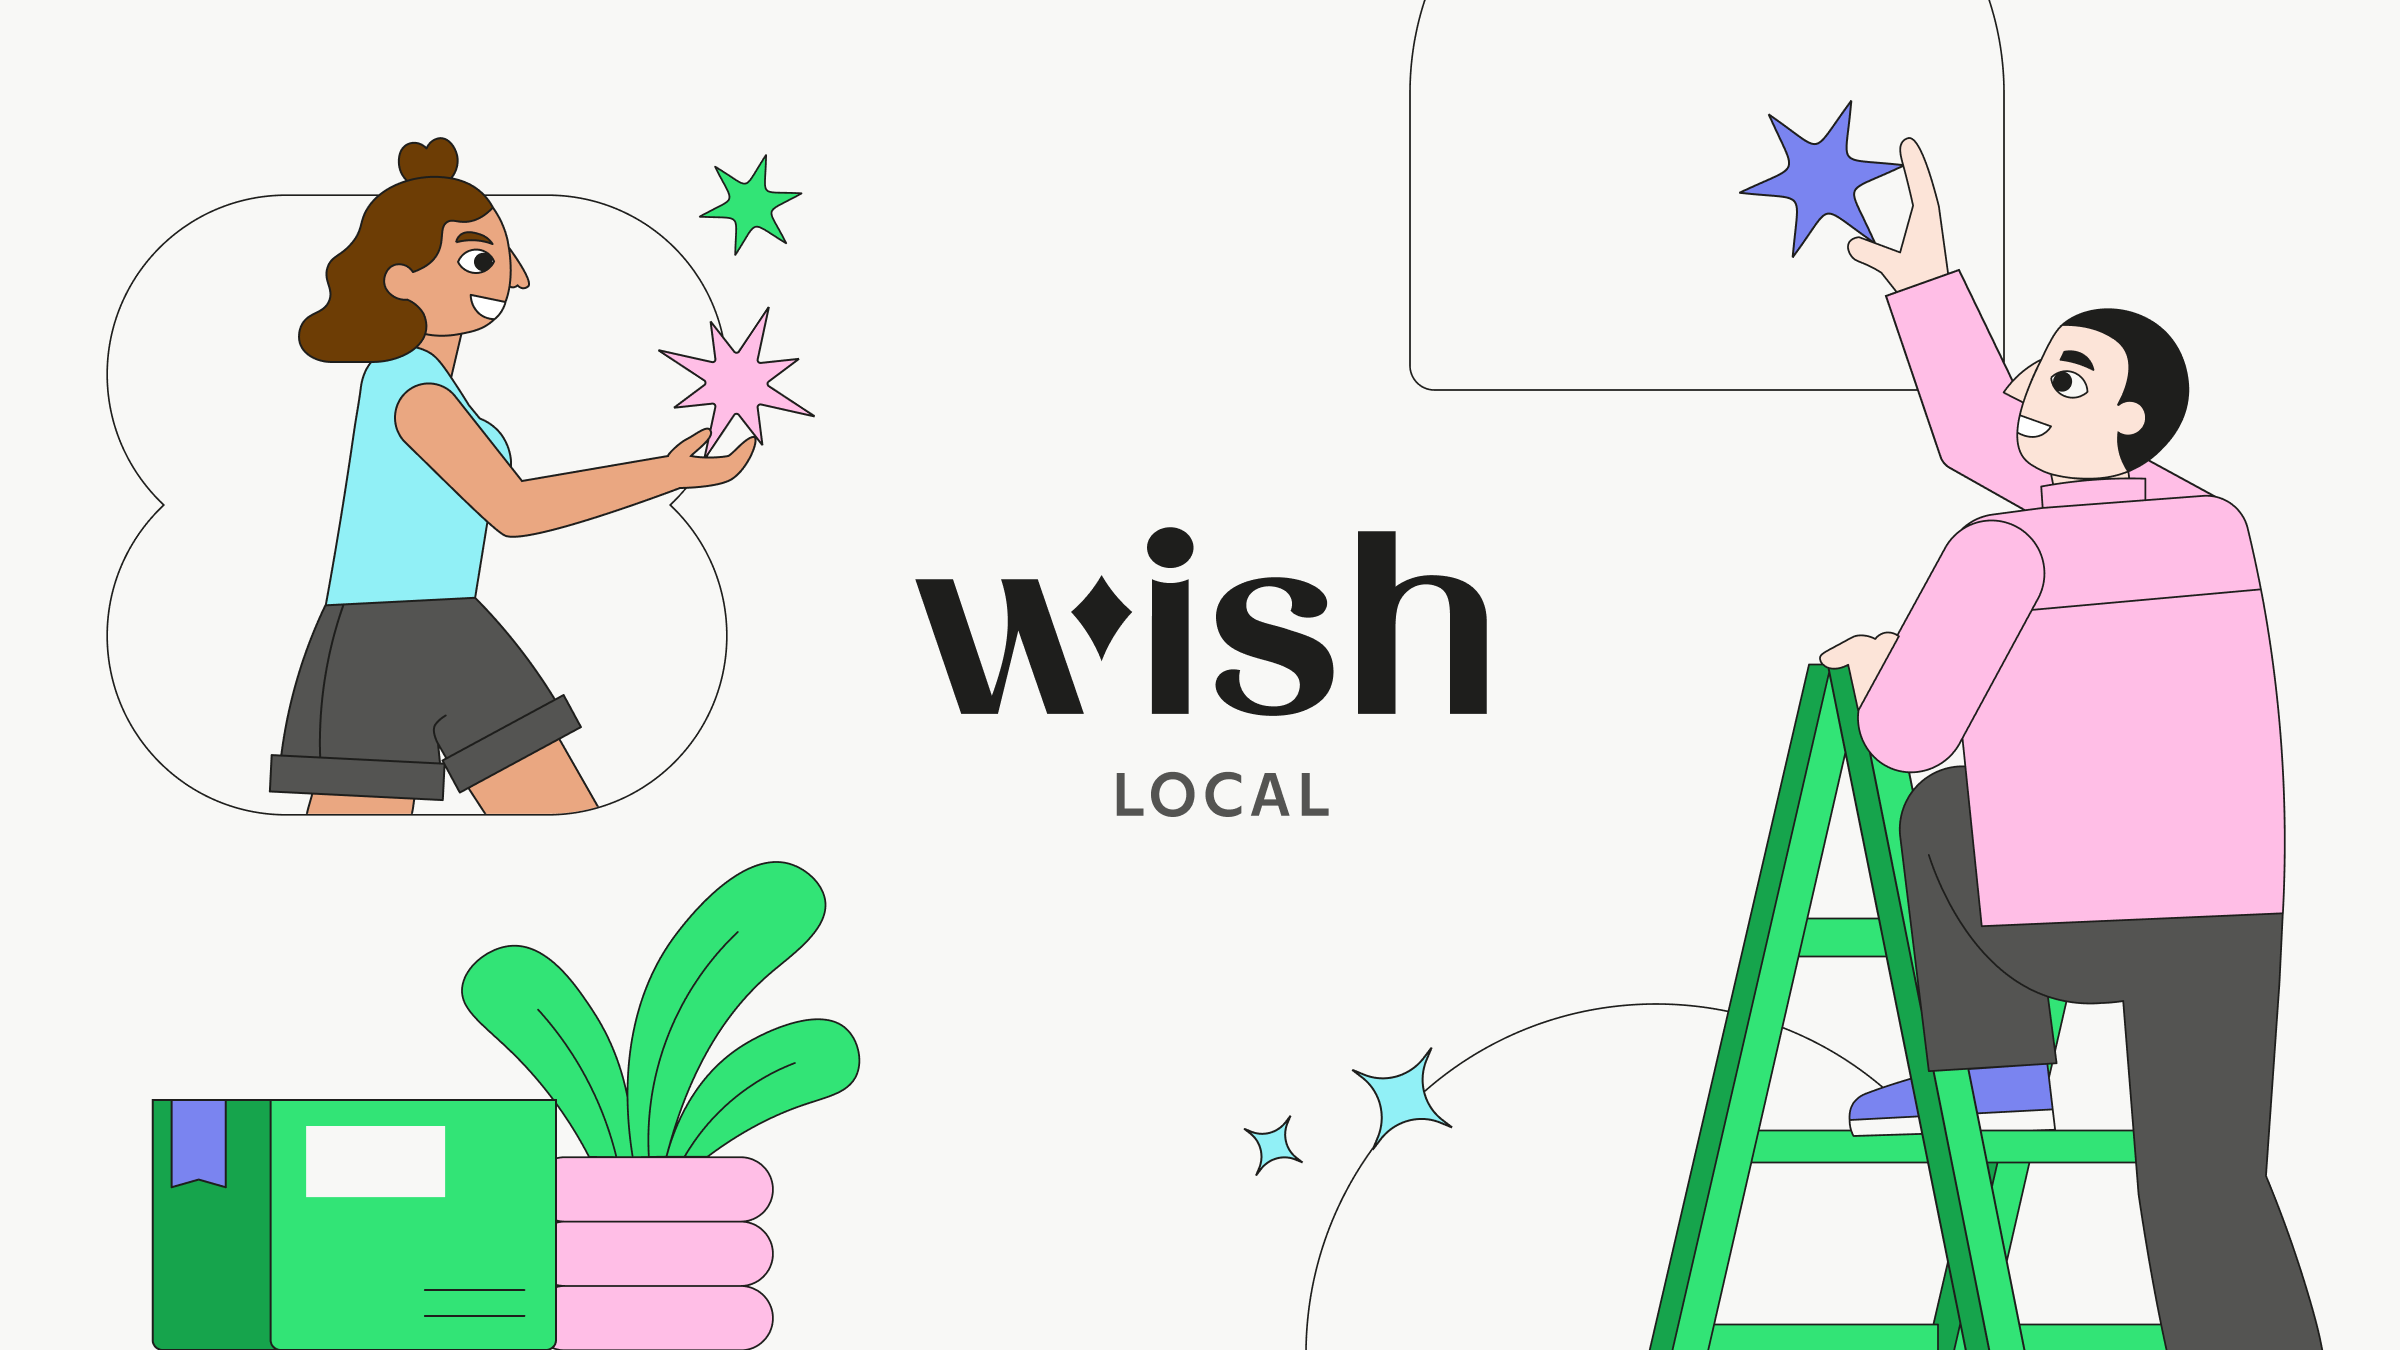 O que está acontecendo na Wish e no Wish Local?